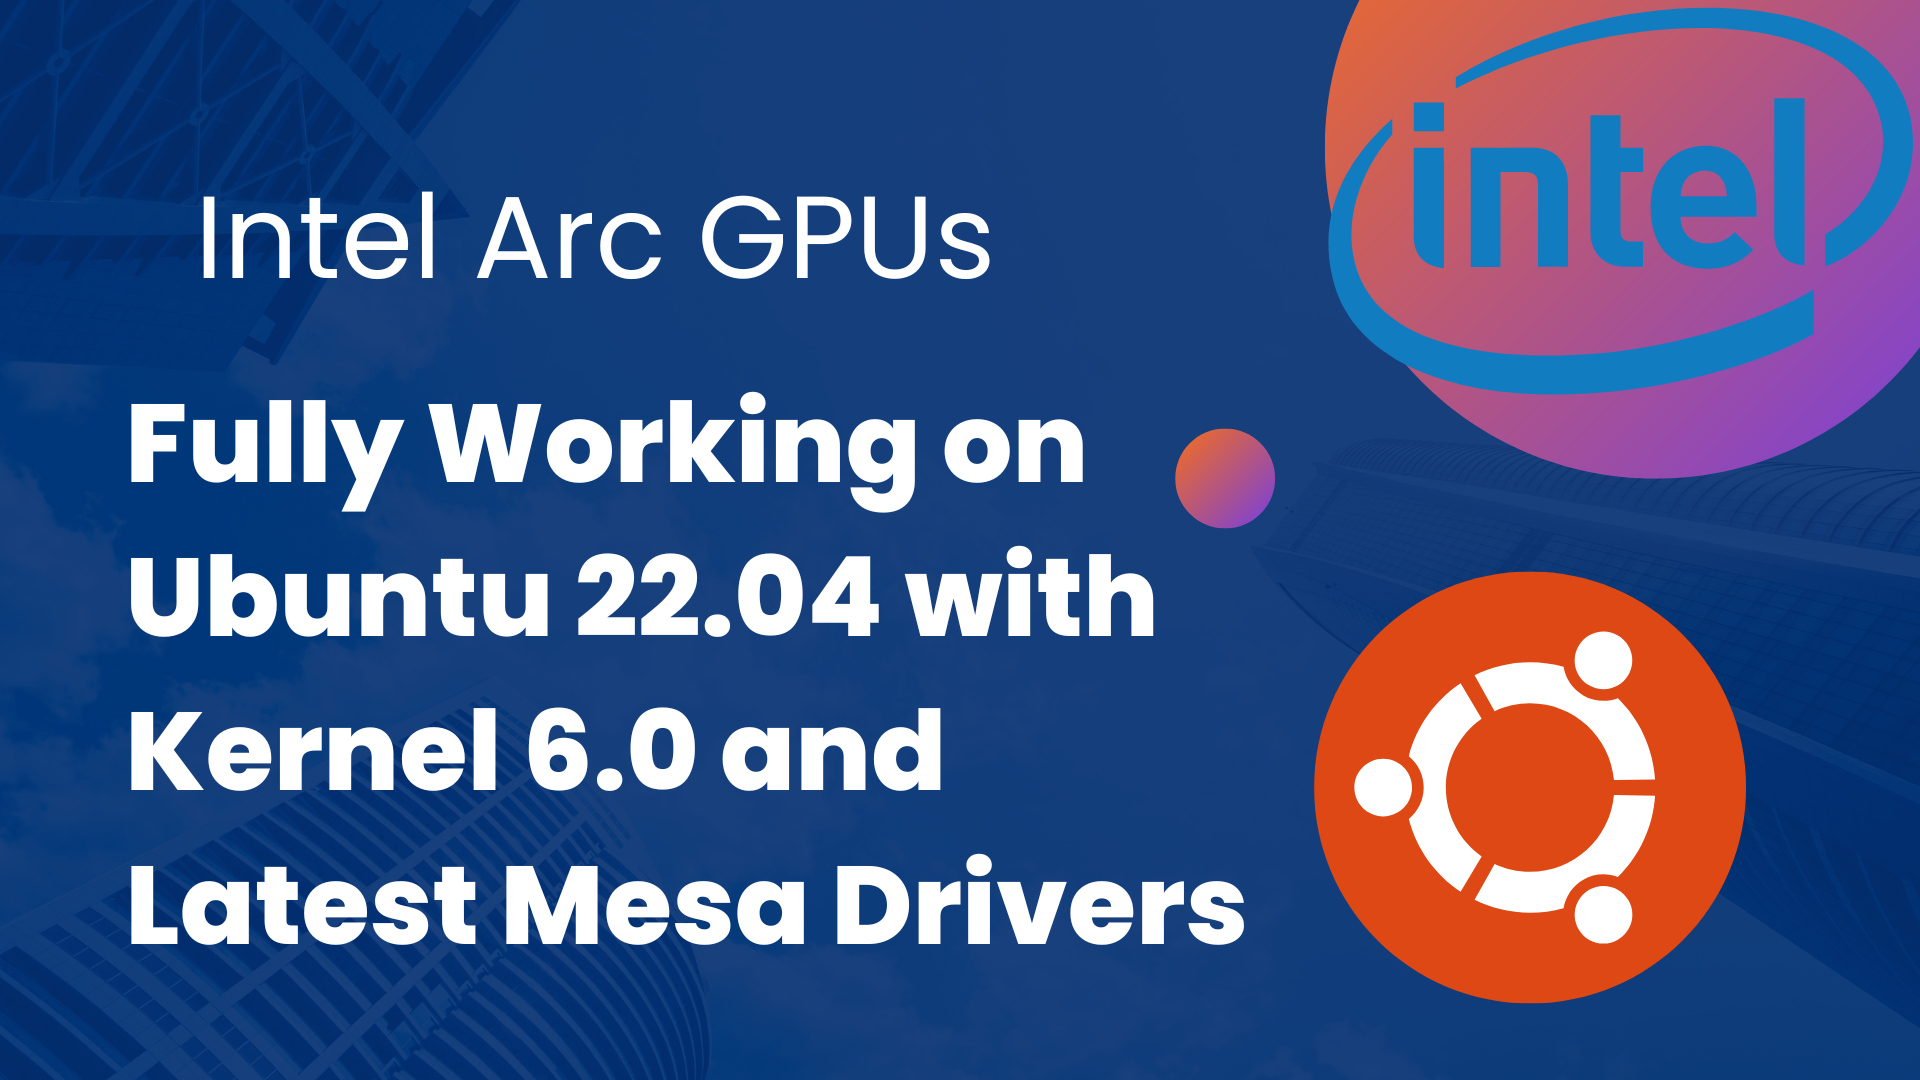 Intel Arc Dedicated GPUs, Linux Kernel 6.0, and latest Mesa on Ubuntu 22.04